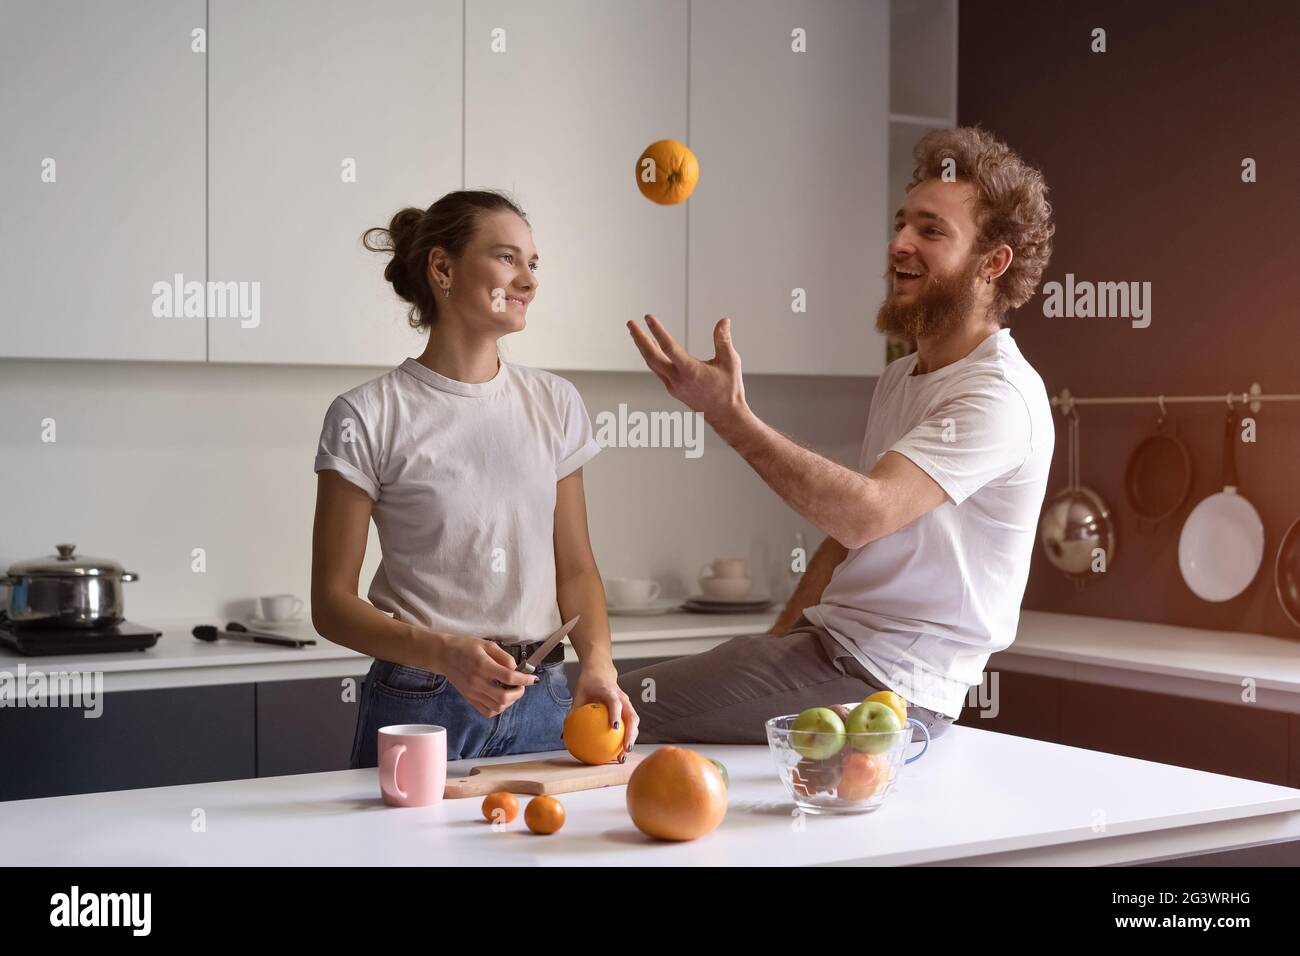 Spielen mit orange jungen Mann glücklich über ihr neues Zuhause junges Paar Kochen in der neuen Küche. Schönes junges Paar im Gespräch enjoyi Stockfoto